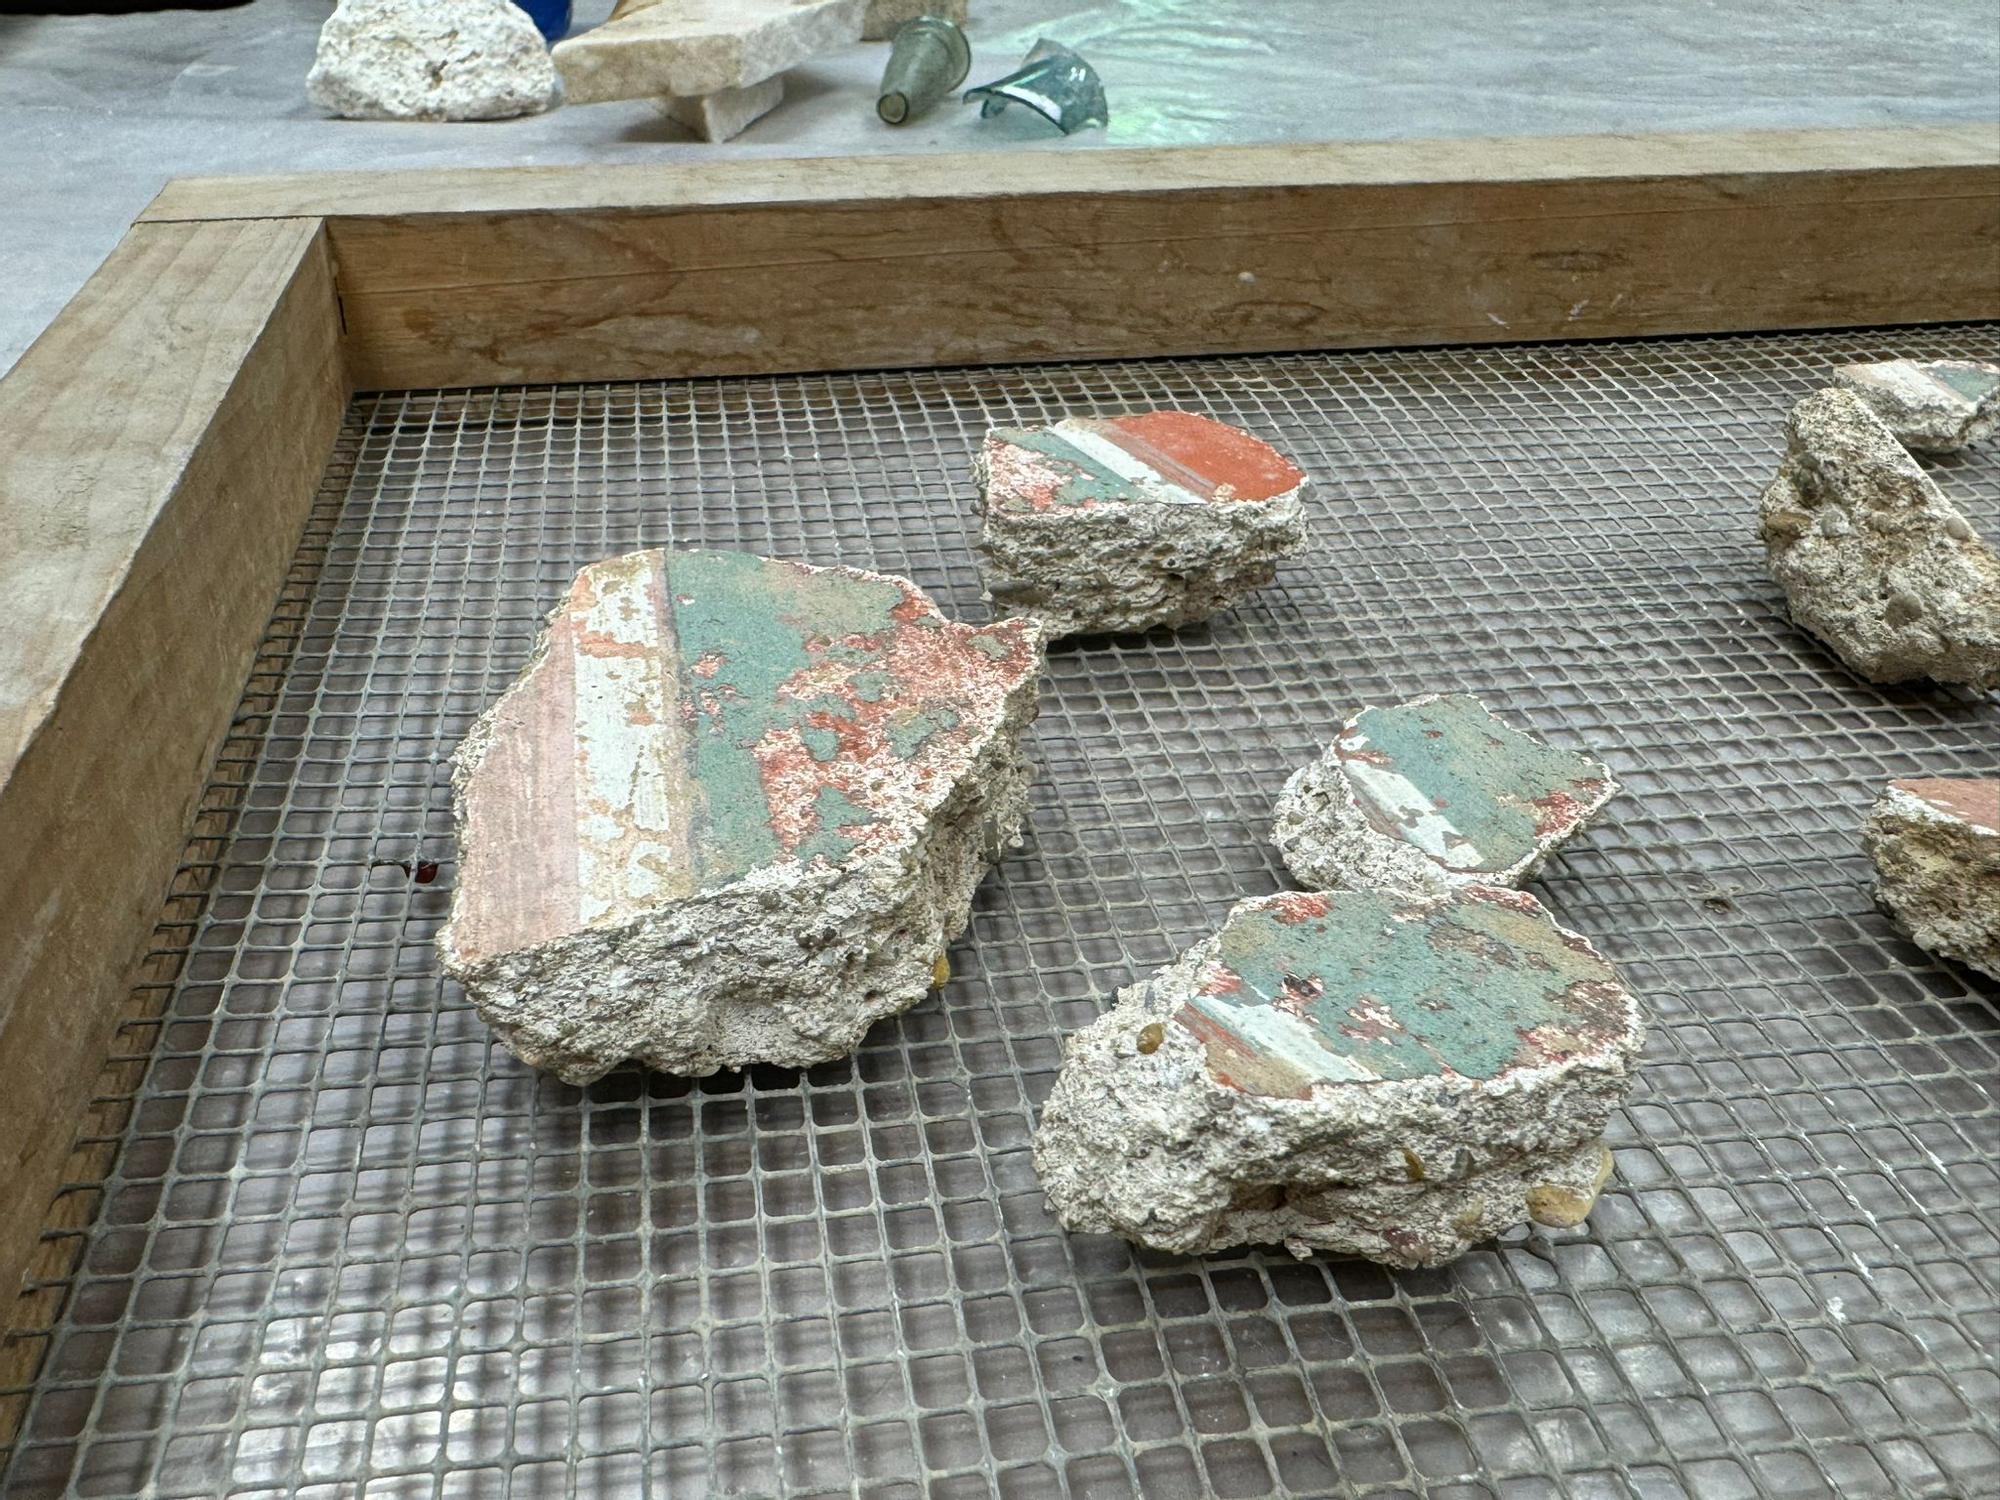 Estos son materiales encontrados bajo la plaza de San Miguel